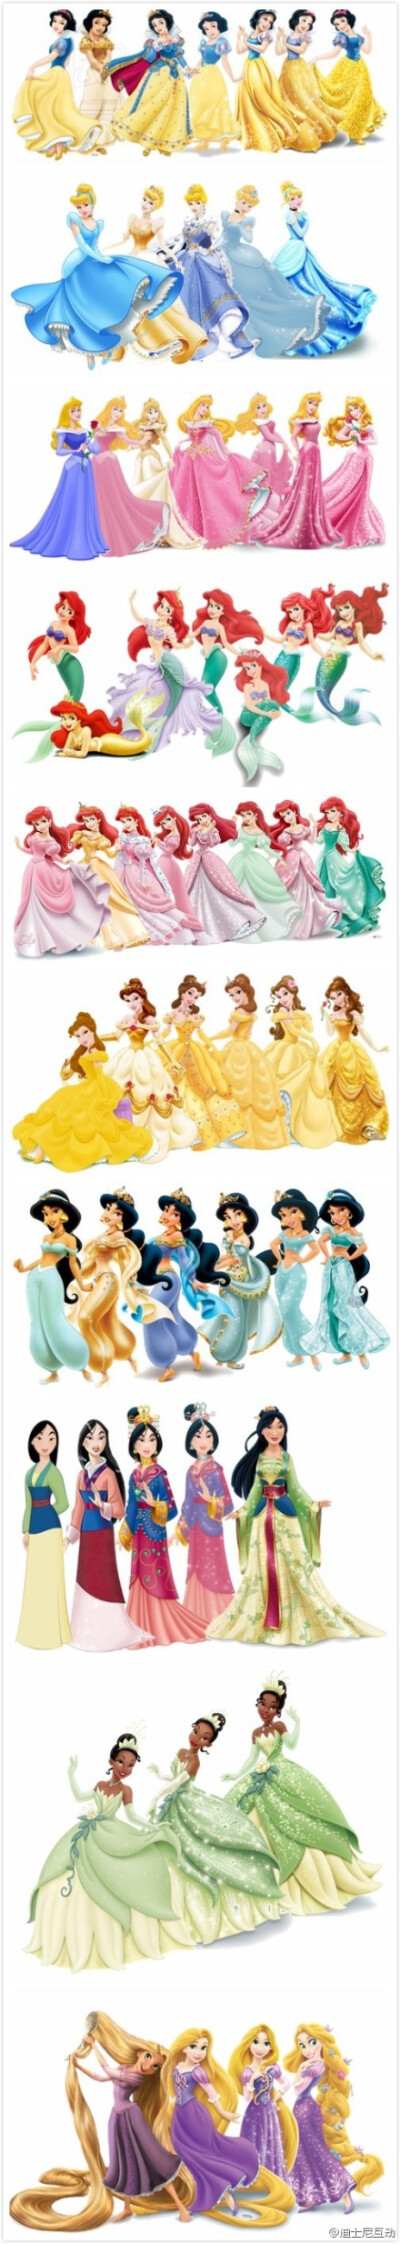 姑娘的衣柜怎么能缺少好看的衣服？公主的衣柜更是不会少的啦！从迪士尼公主不同时期的服装来看，你觉得她们是变美了?还是变美了?还是变美了？